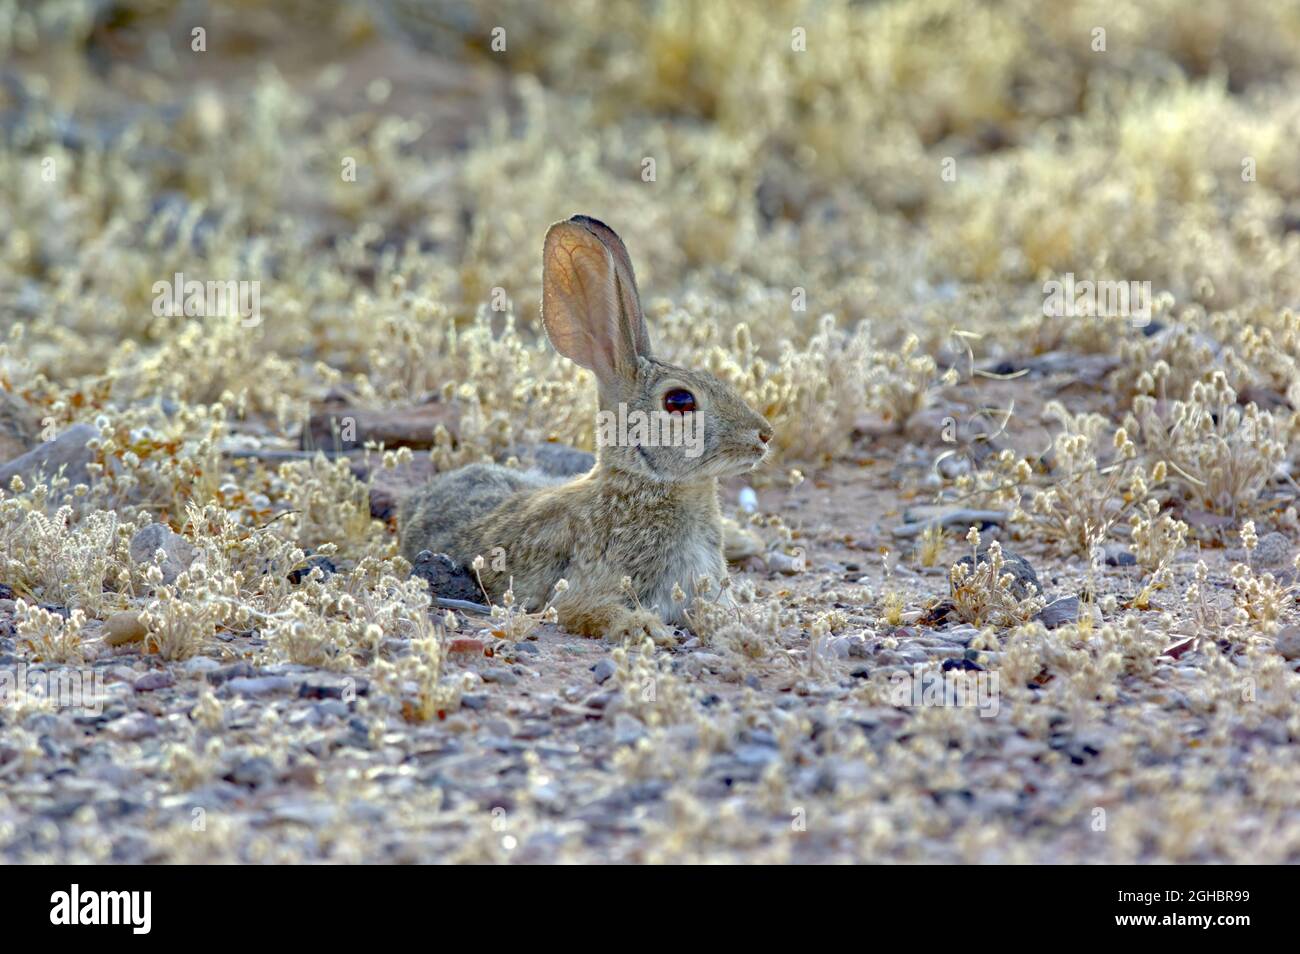 Ein Desert Cottontail Rabbit, der in Arizona beheimatet ist und sich inmitten der Vegetation entspannt. Wissenschaftlicher Name ist Leporidae Sylvilagus. Stockfoto